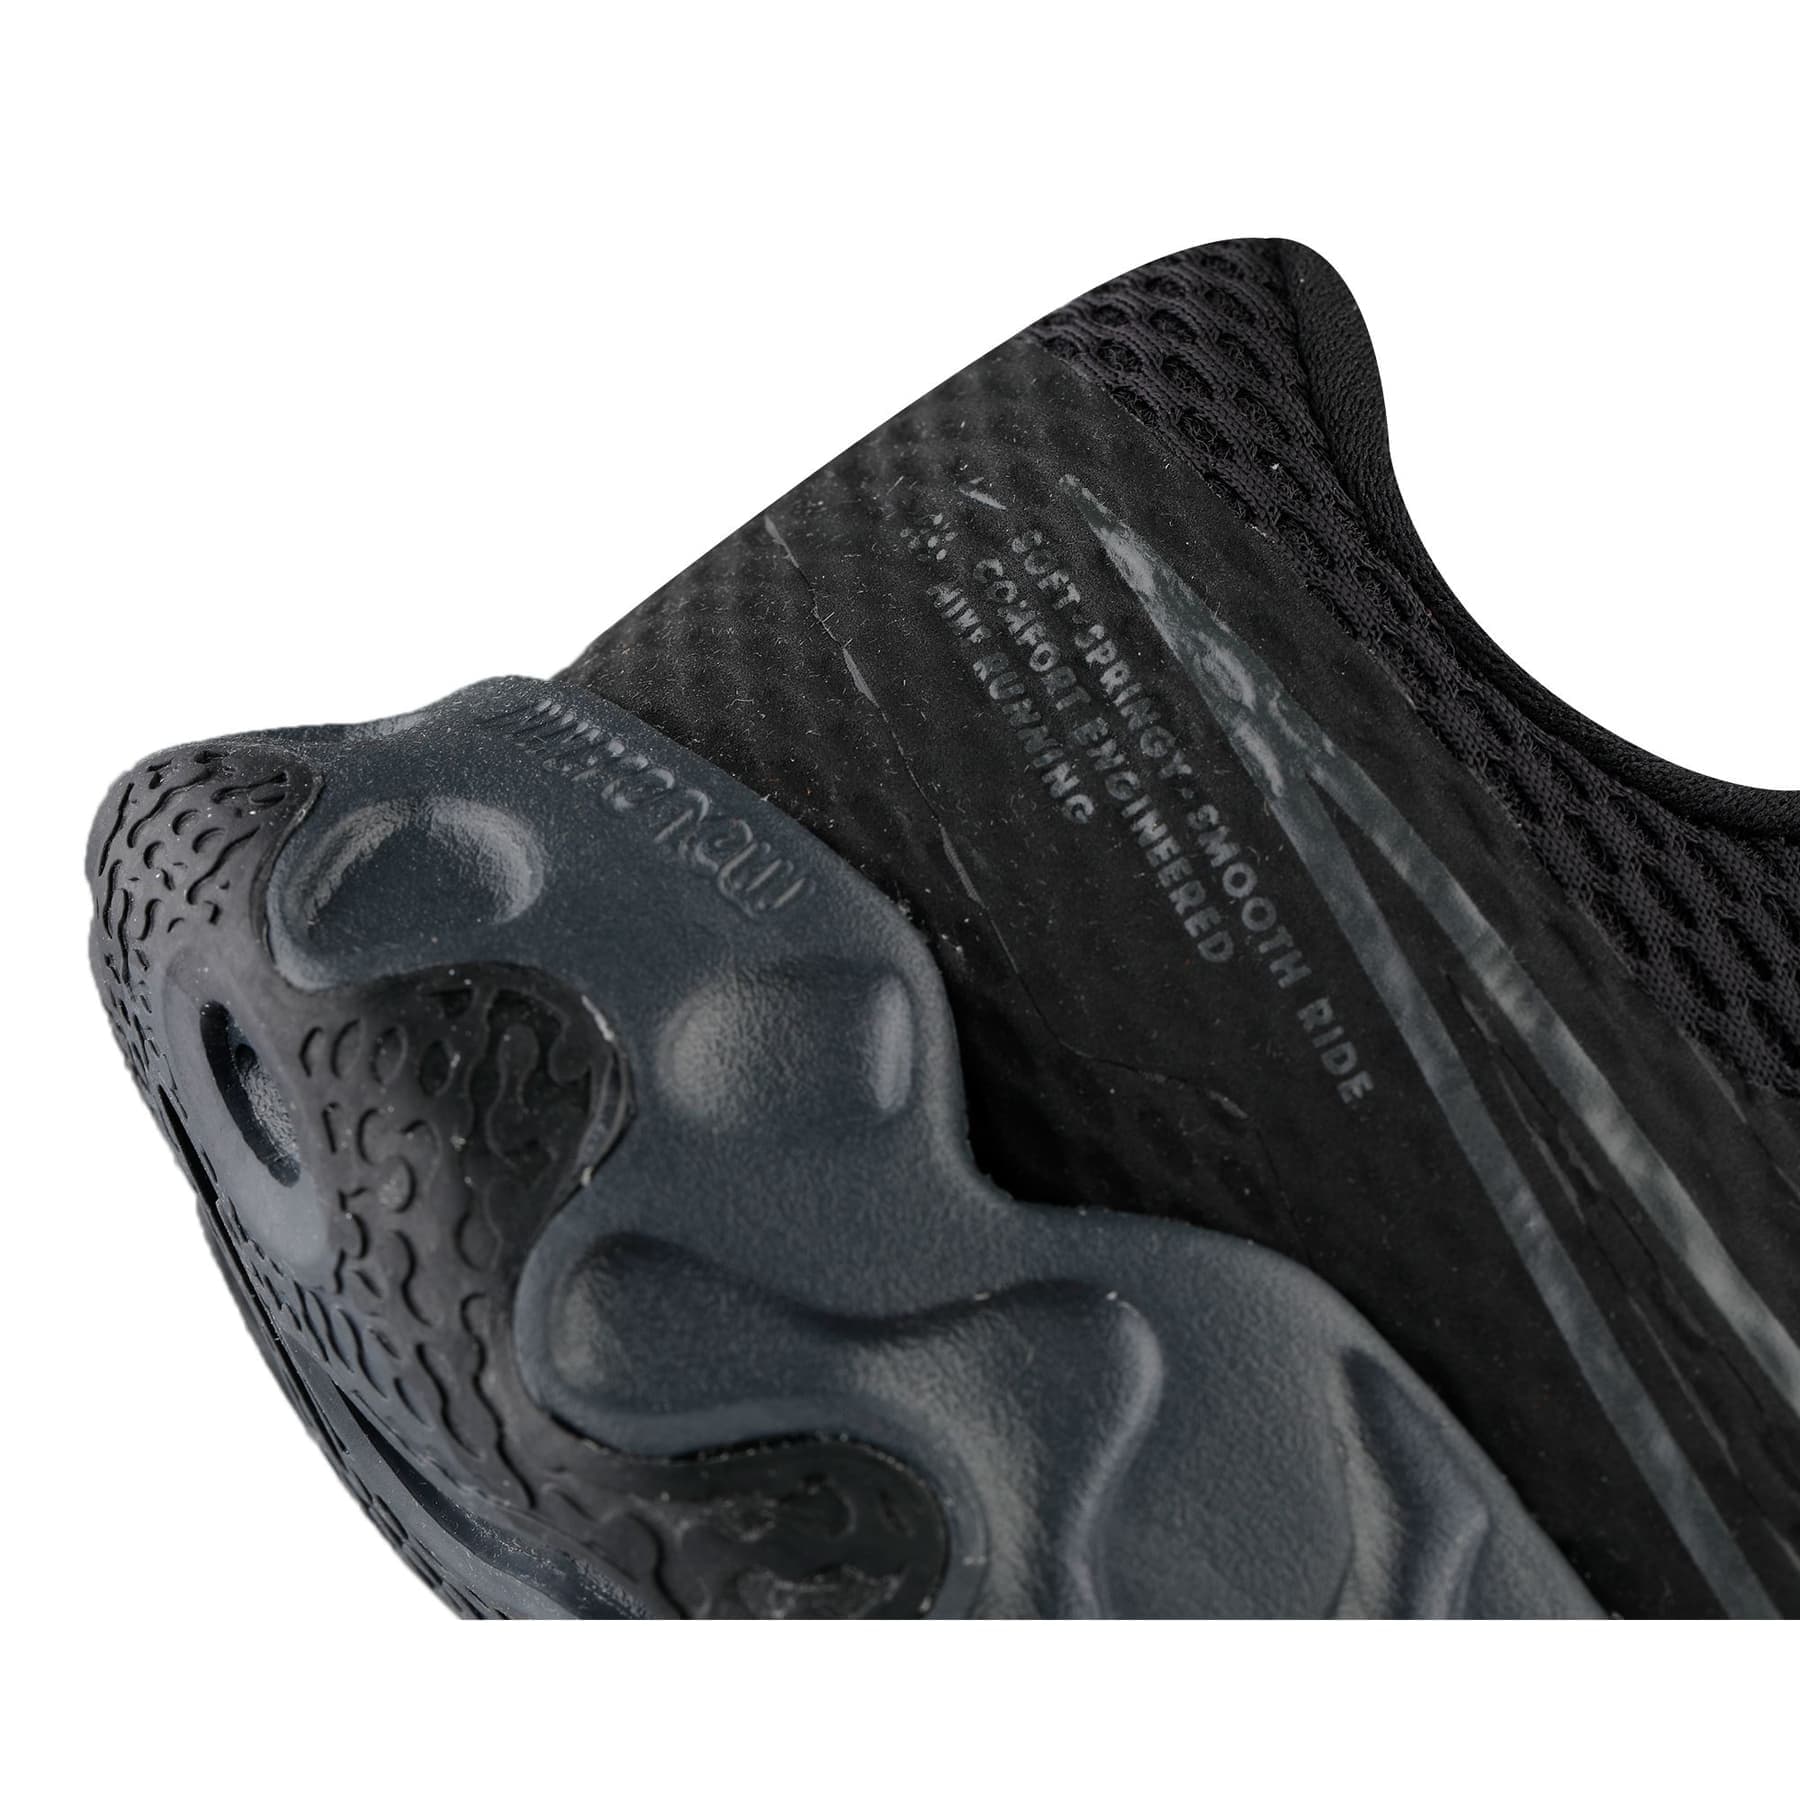 Nike Renew Ride 2 Siyah Koşu Ayakkabısı (CU3507-002)